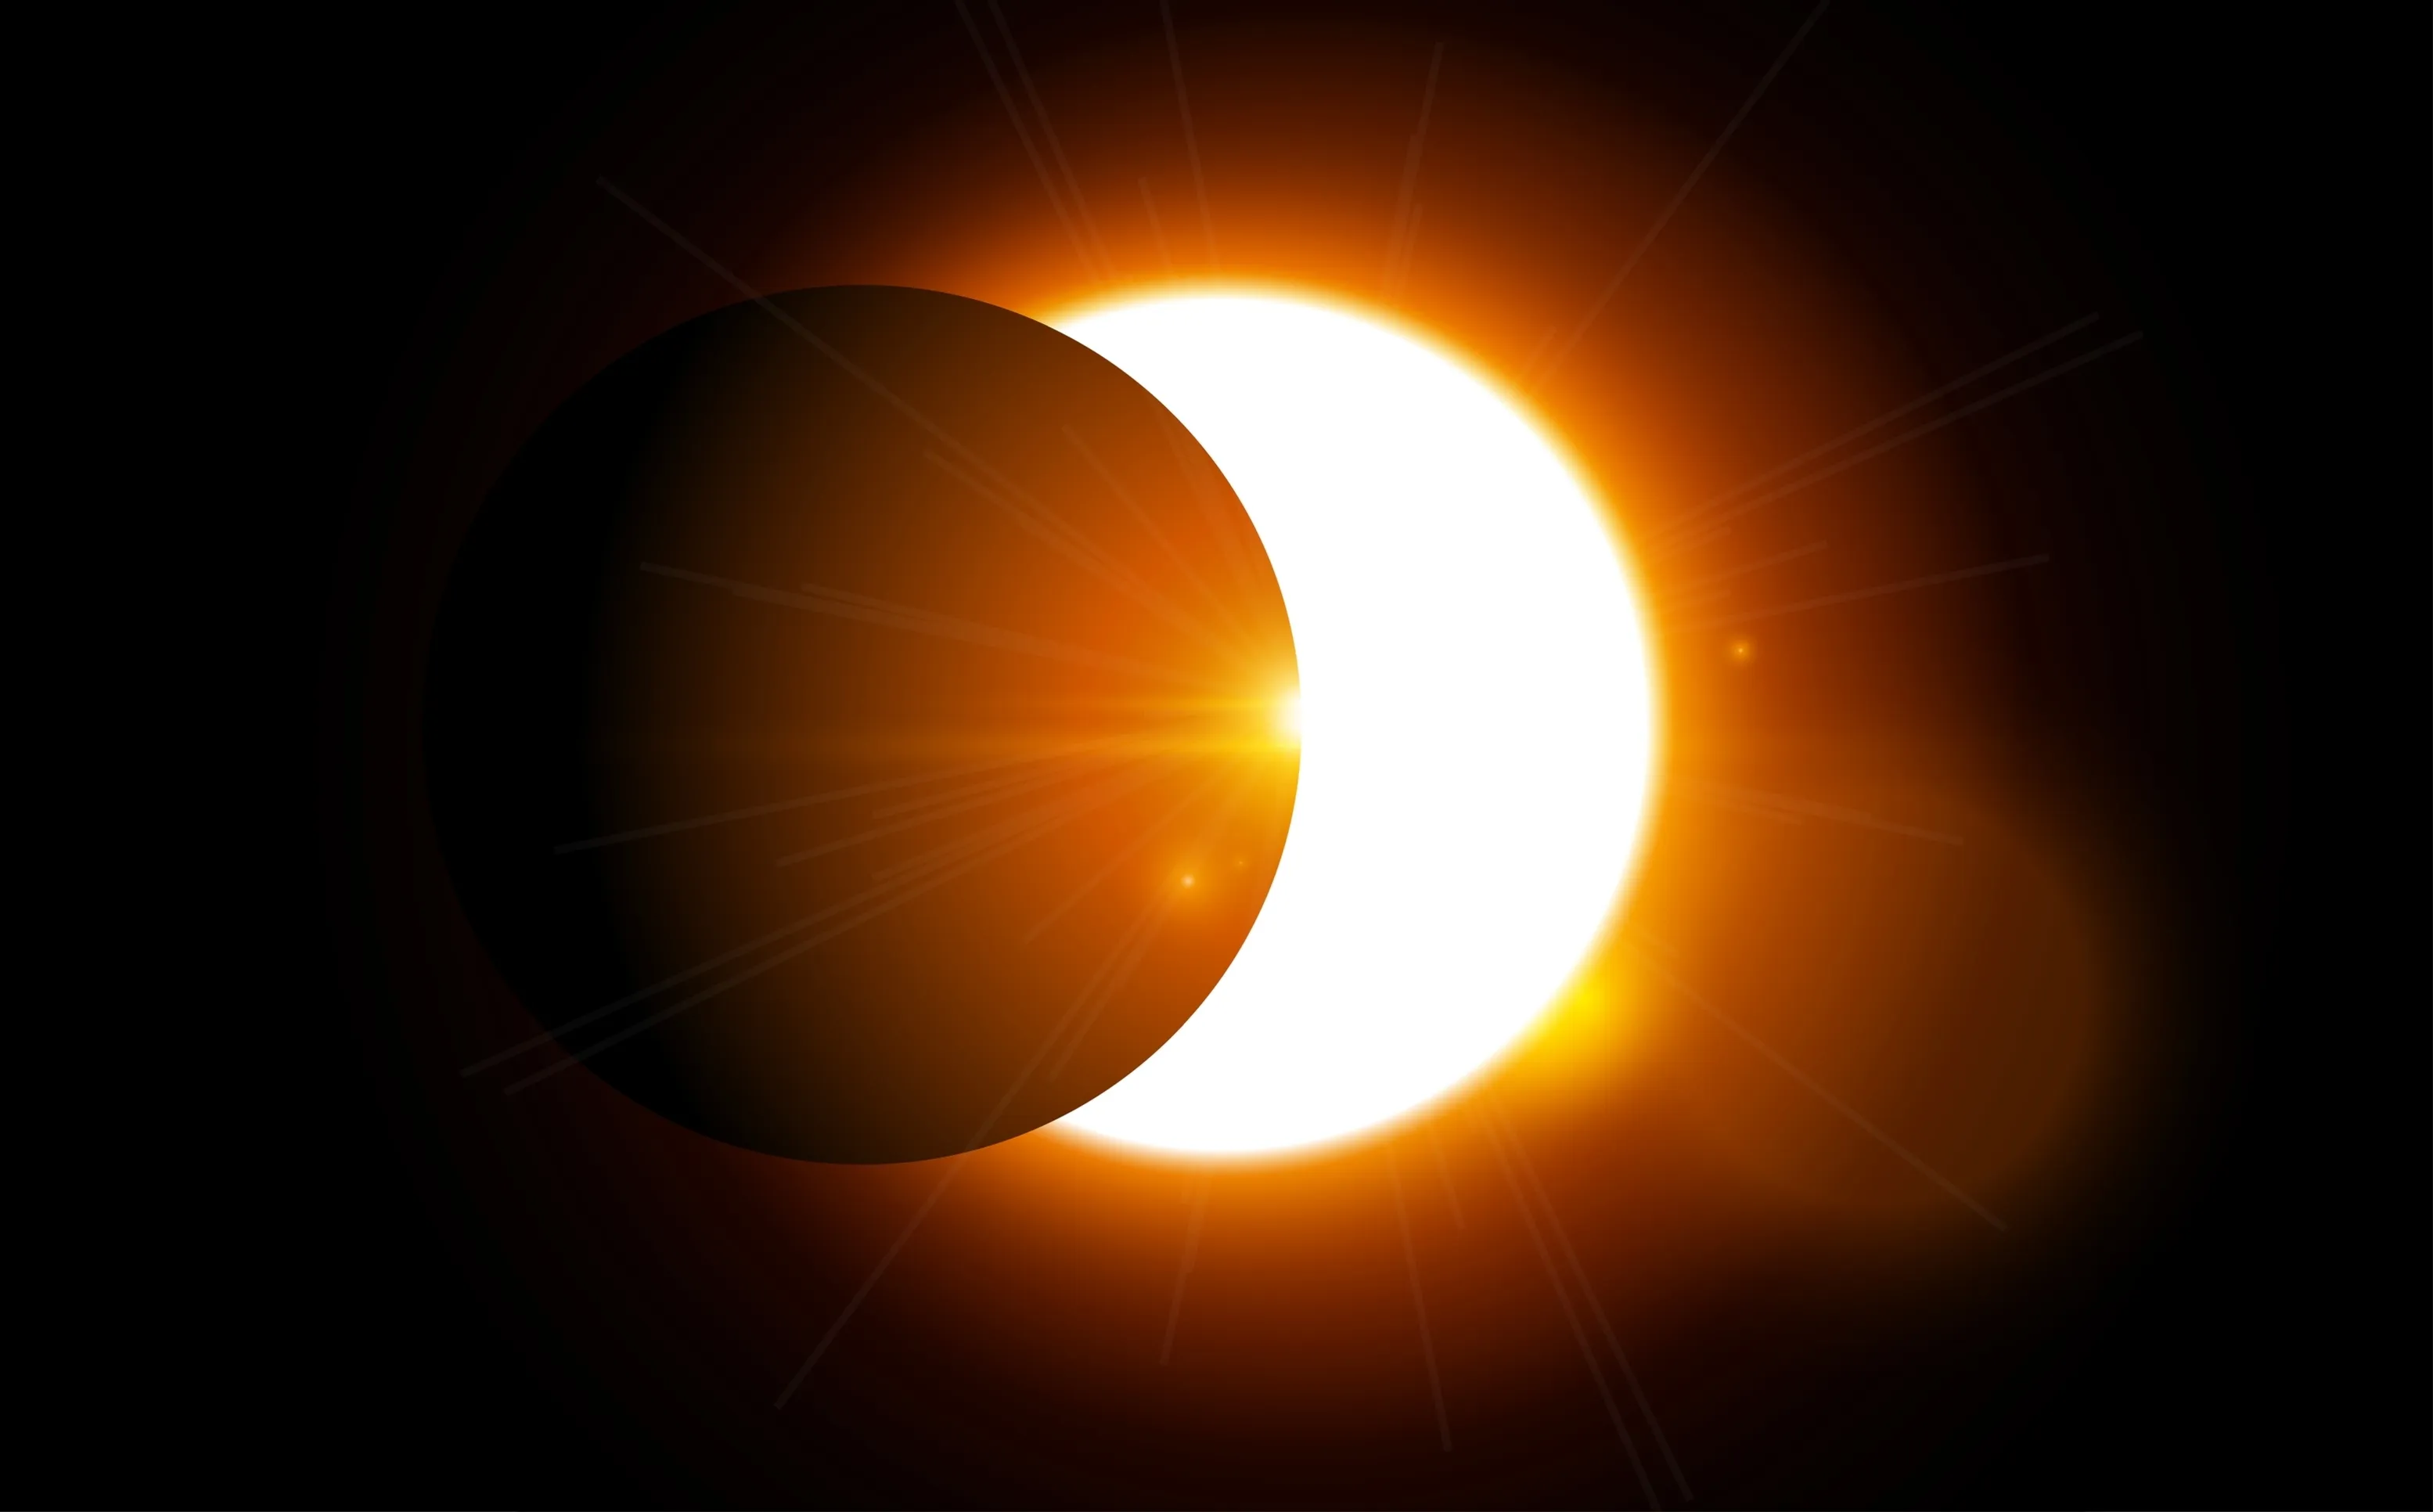 Eclipse total de sol.?w=200&h=150